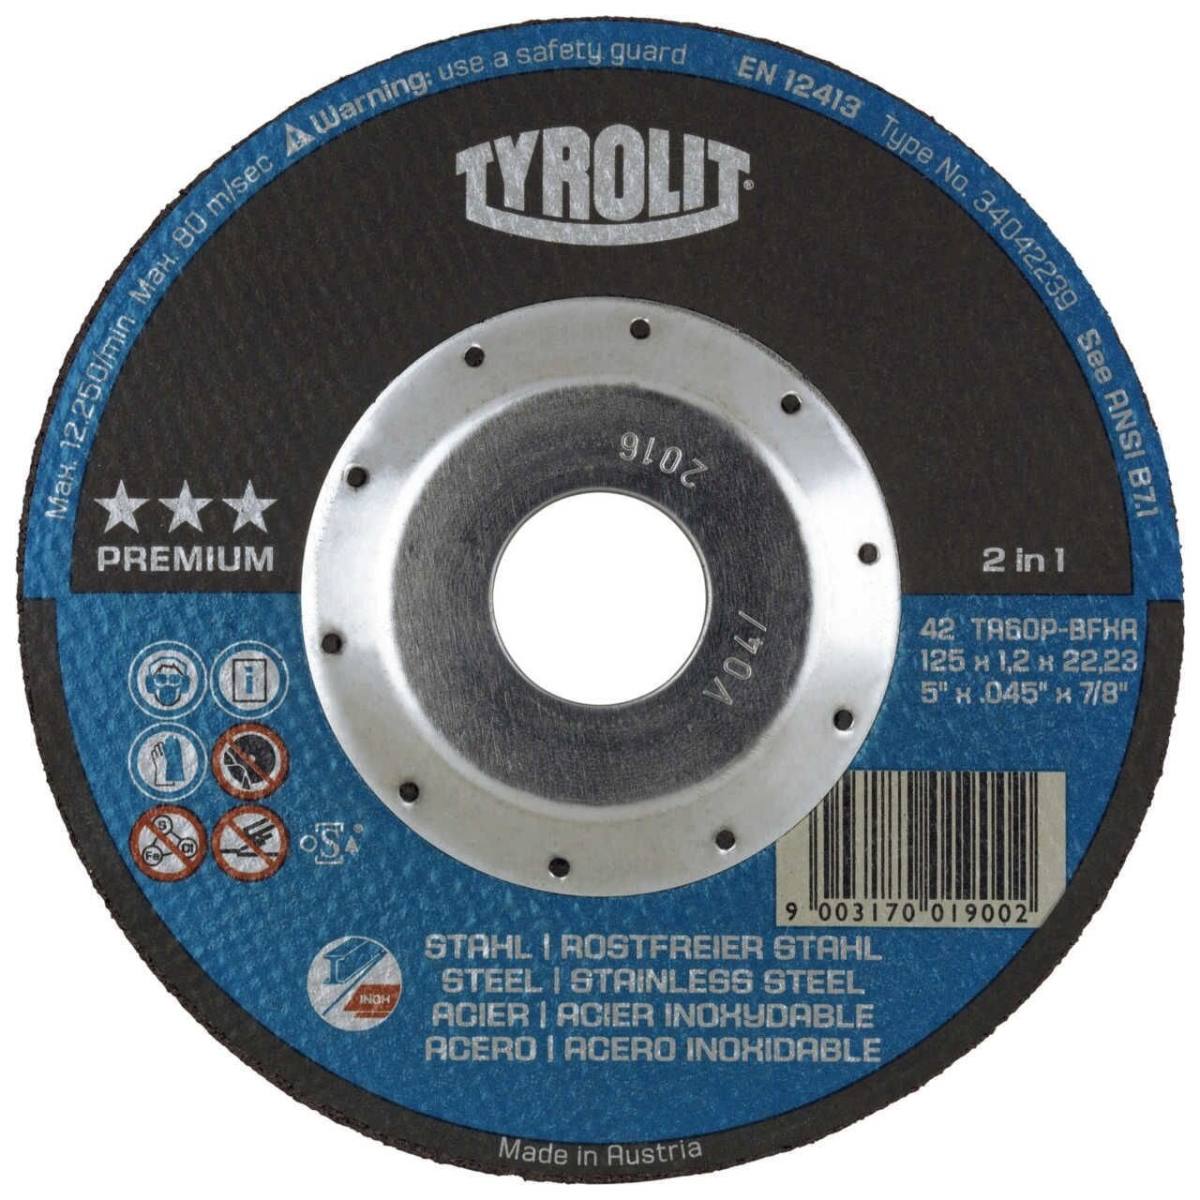 Dischi da taglio TYROLIT DxUxH 150x1,2x22,23 Con protezione antitaglio DEEP per acciaio e acciaio inox, forma: 42 - versione offset, Art. 34042240